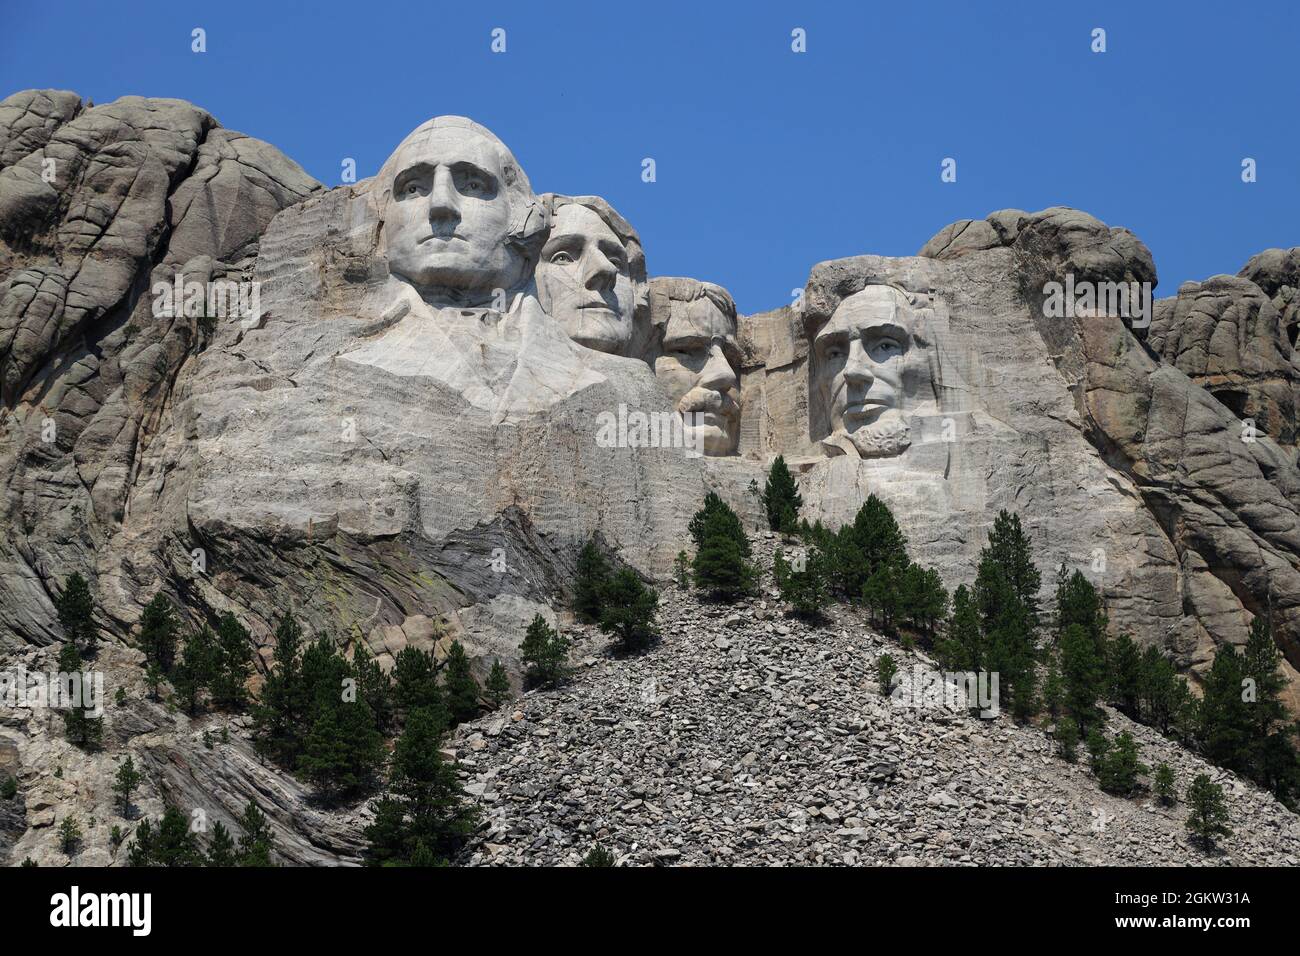 Mémorial national de Mount Rushmore. Keystone, Dakota du Sud, États-Unis Banque D'Images